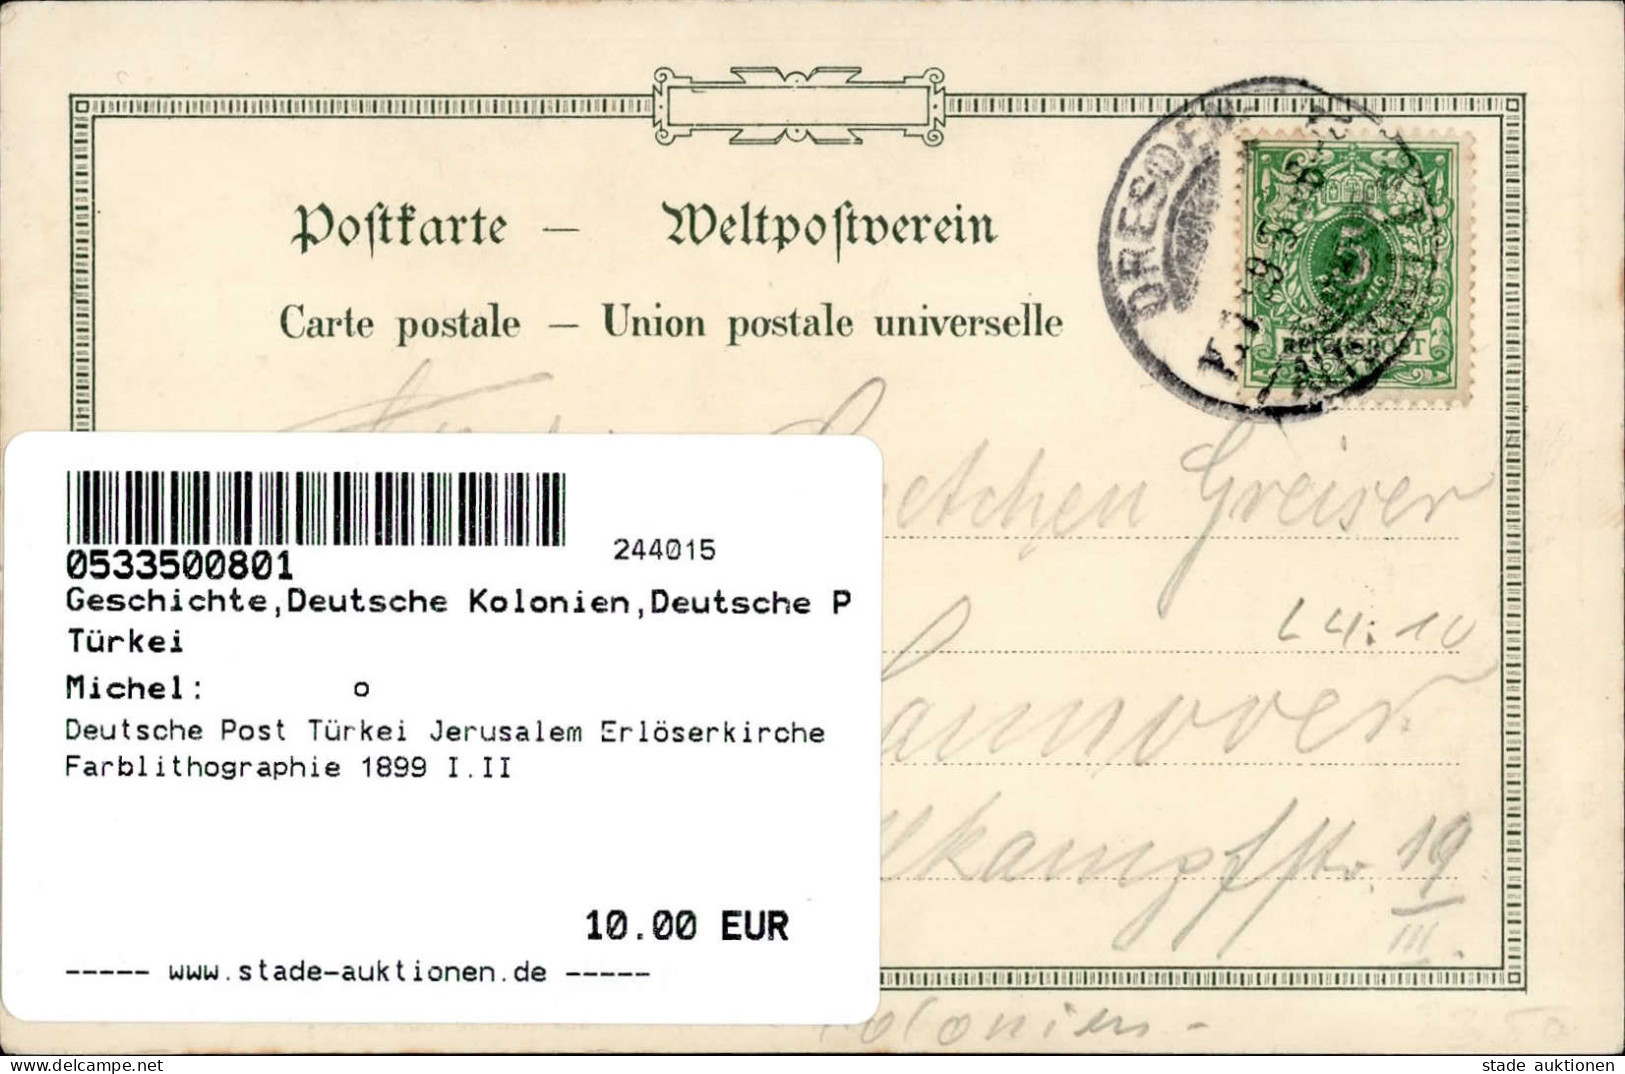 Deutsche Post Türkei Jerusalem Erlöserkirche Farblithographie 1899 I.II - History